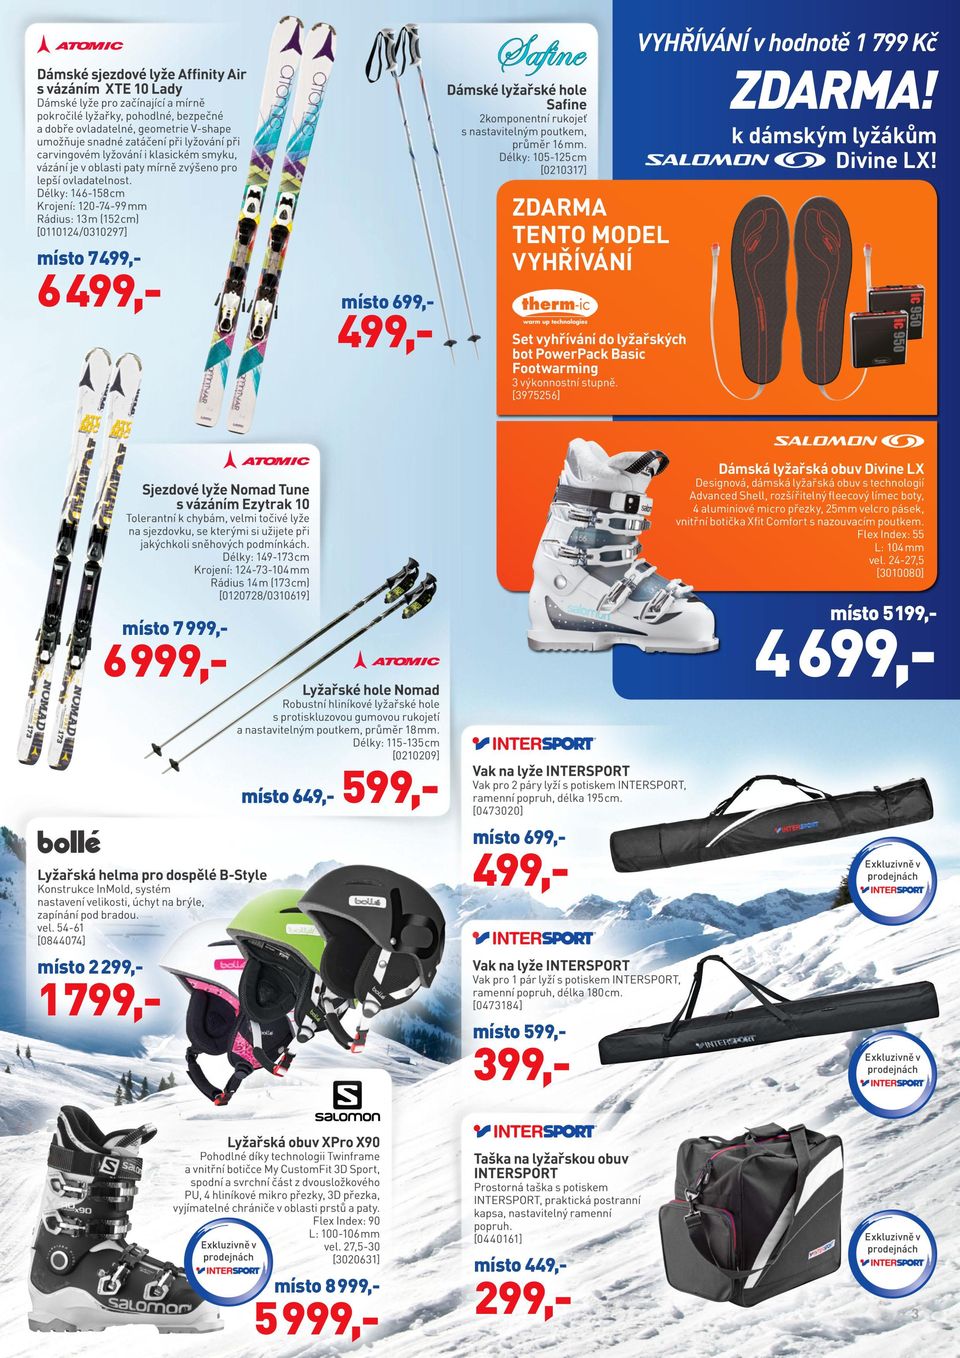 místo 7999,- 6999,- Dámská lyžařská obuv Divine LX Designová, dámská lyžařská obuv s technologií Advanced Shell, rozšířitelný fleecový límec boty,